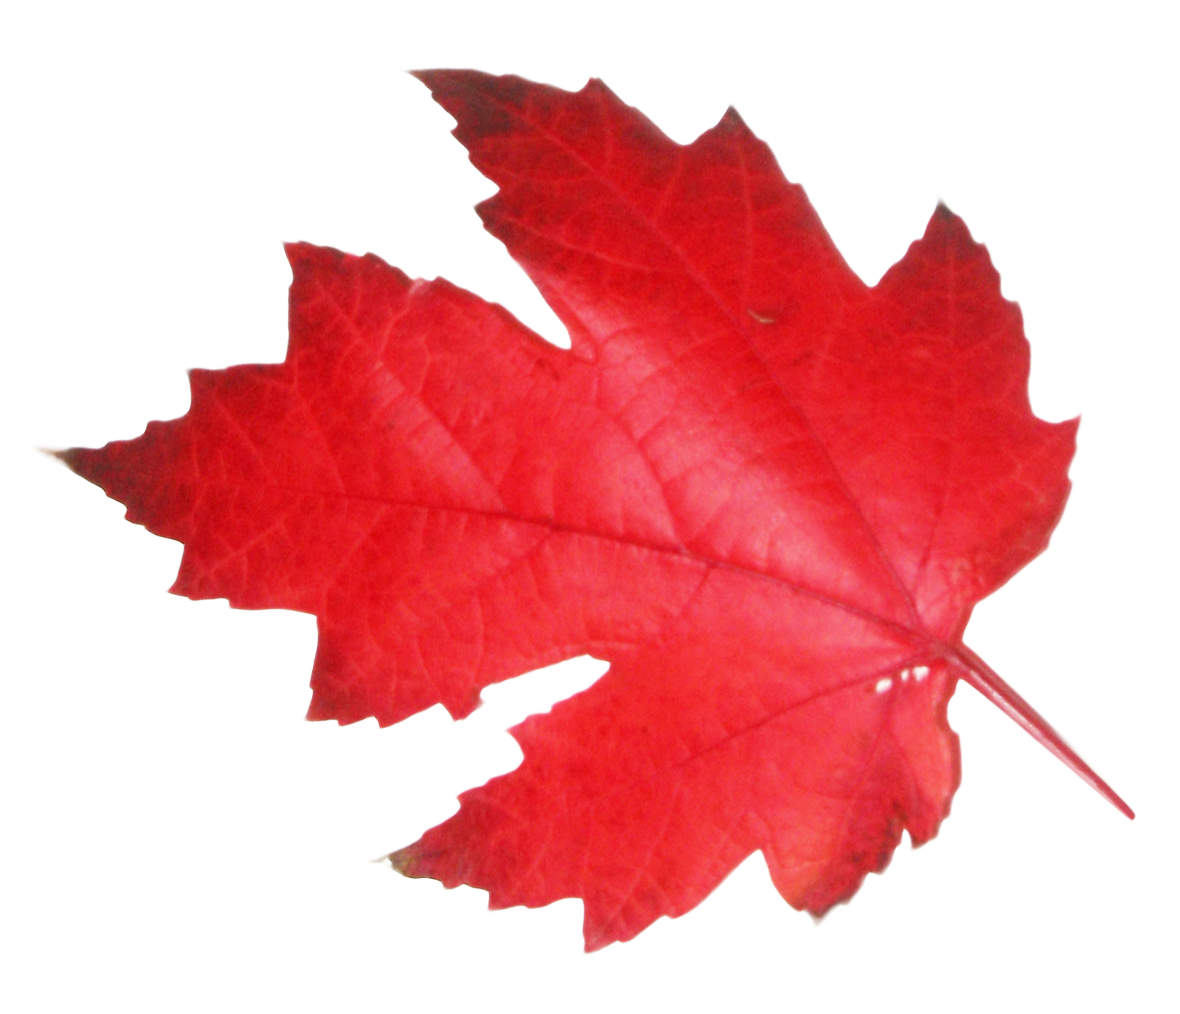 Maple Leaf PNG Image